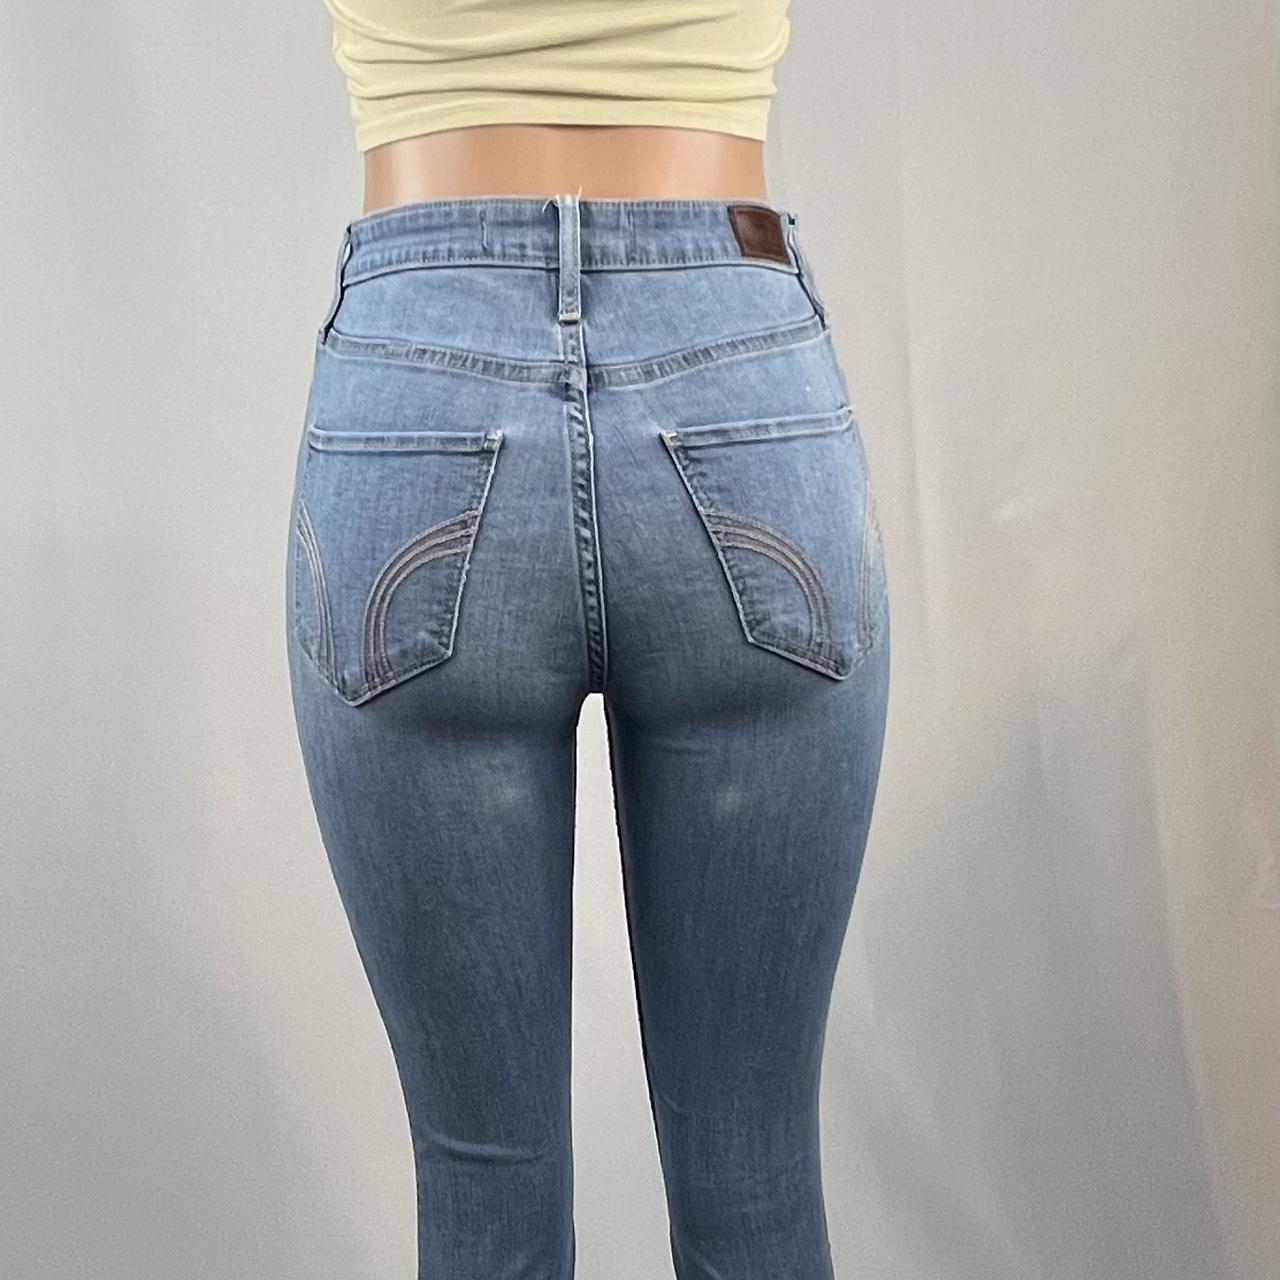 Ultra high rise super skinny jeans size 7R, L30 W28... - Depop